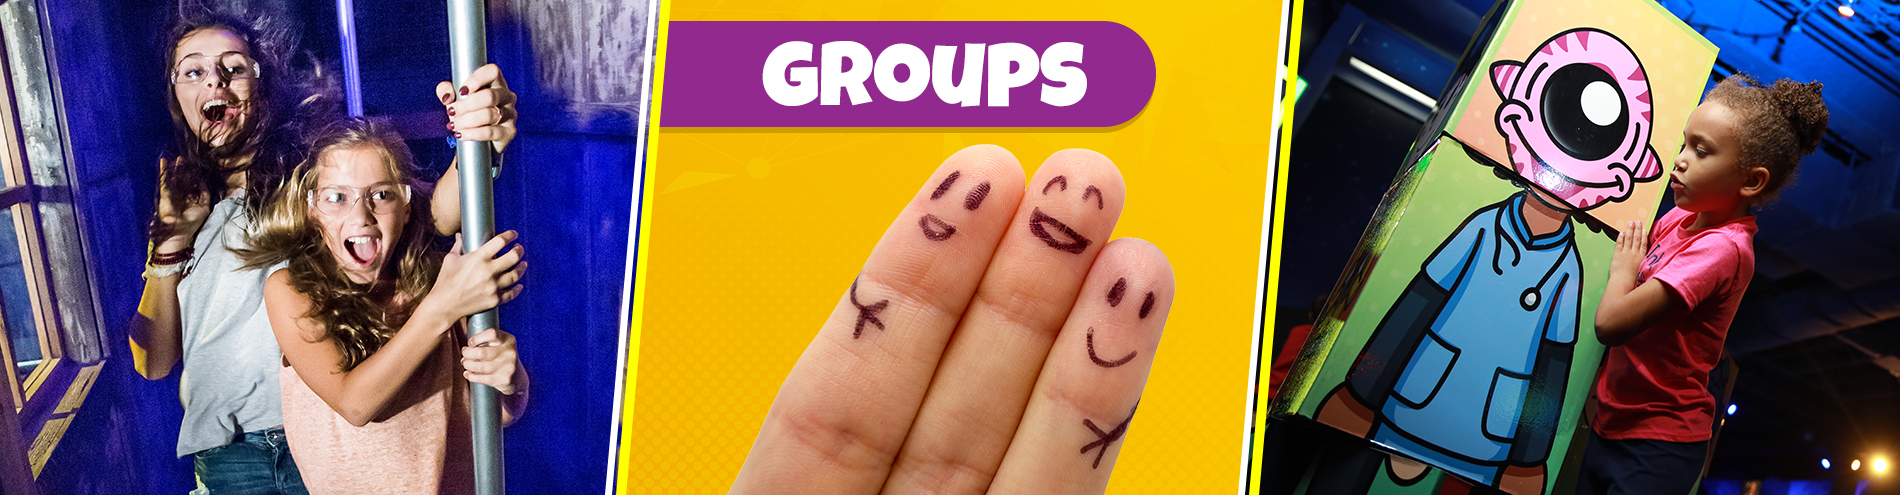 Groups Header